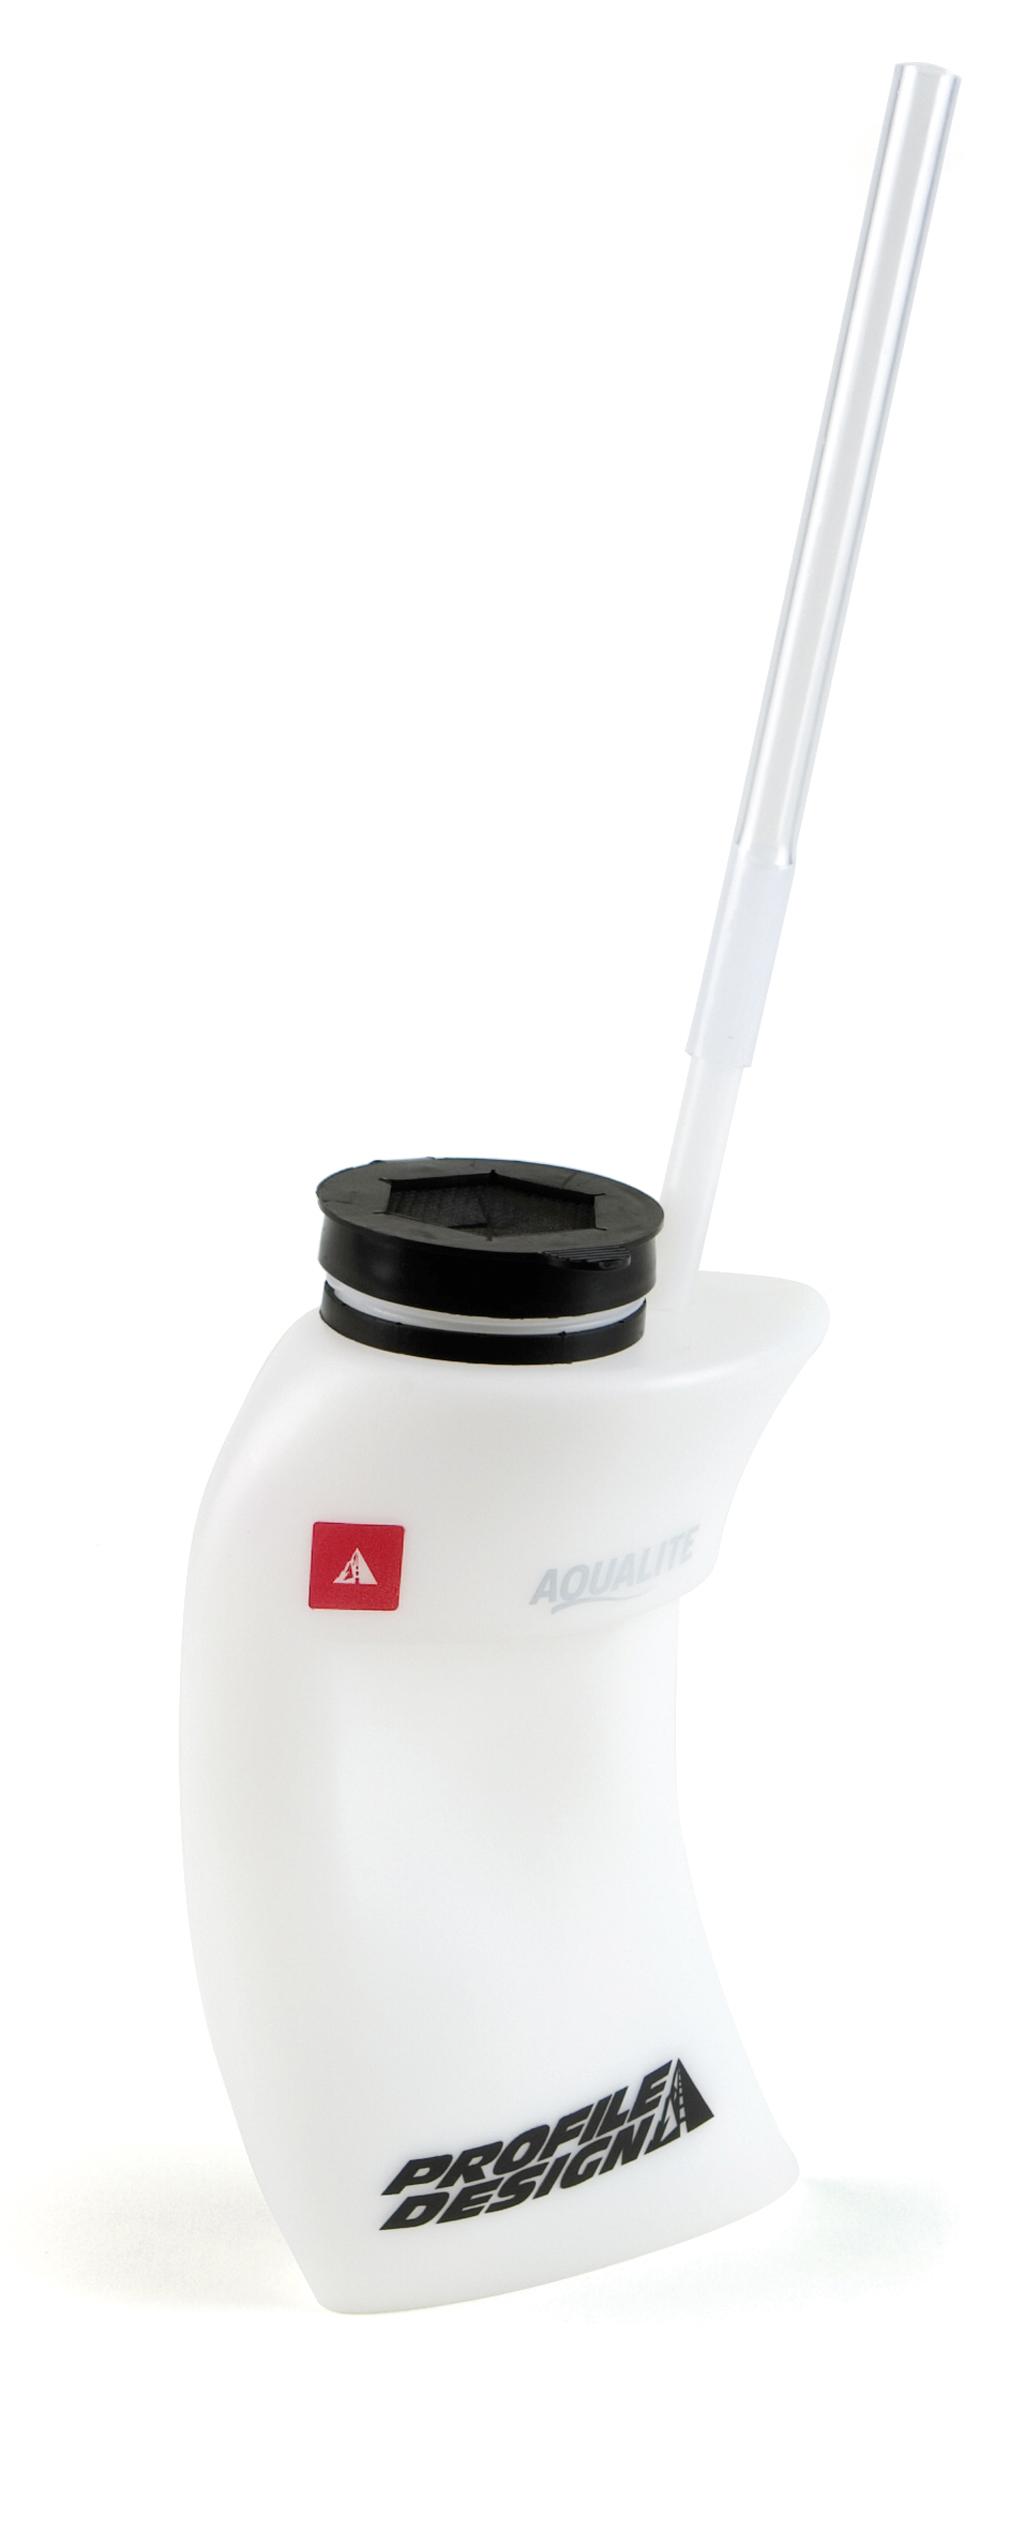 Foto Profile Design Aqualite Sistema de hidratación para Aeromanubrio, ... foto 336381